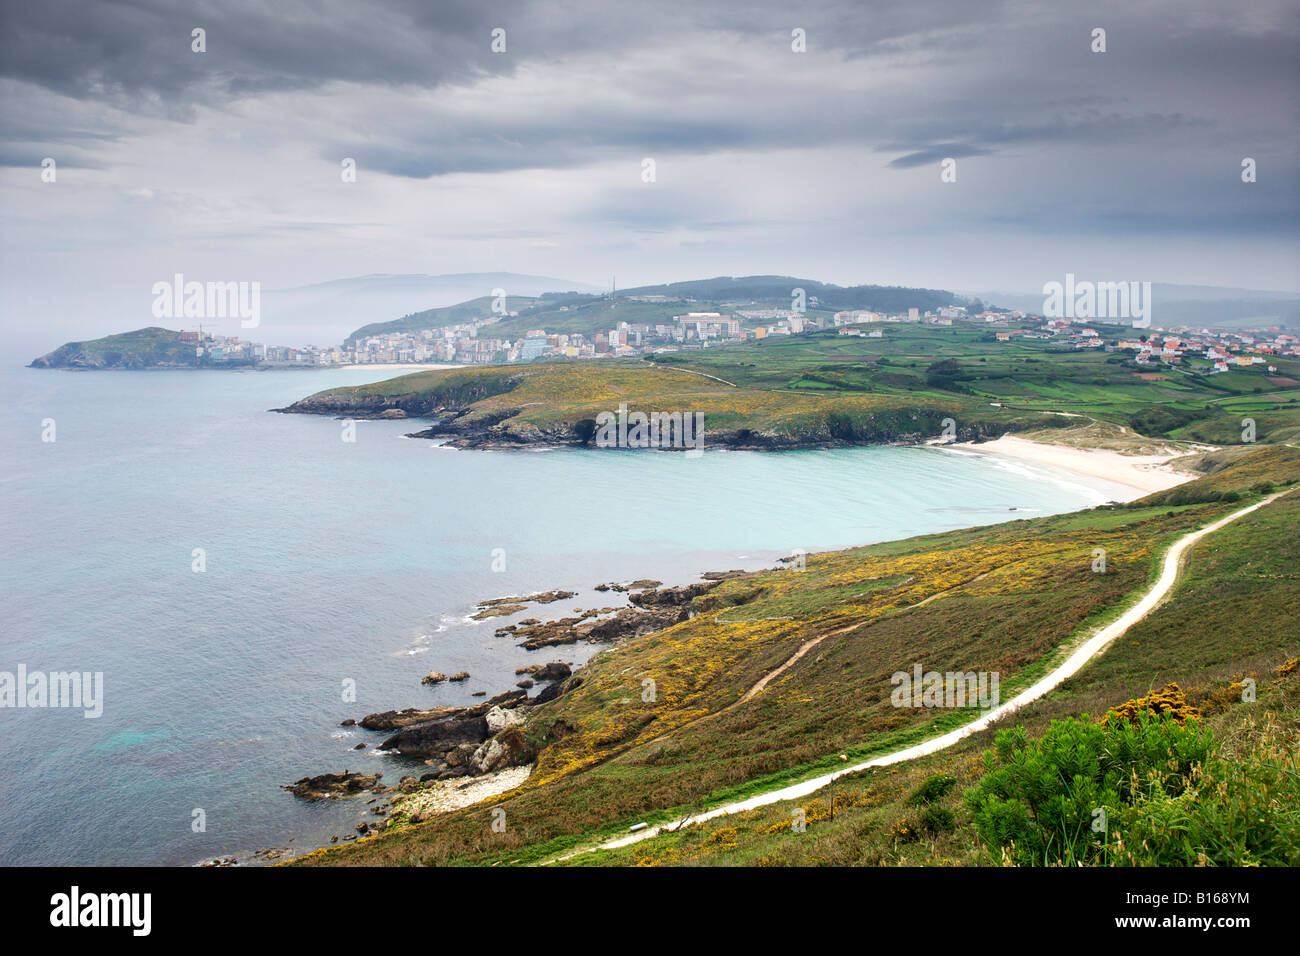 Vista sul villaggio costiero di Malpica de Bergantinos sulla costa atlantica di A Coruña provincia dalla Spagna nella regione della Galizia. Foto Stock